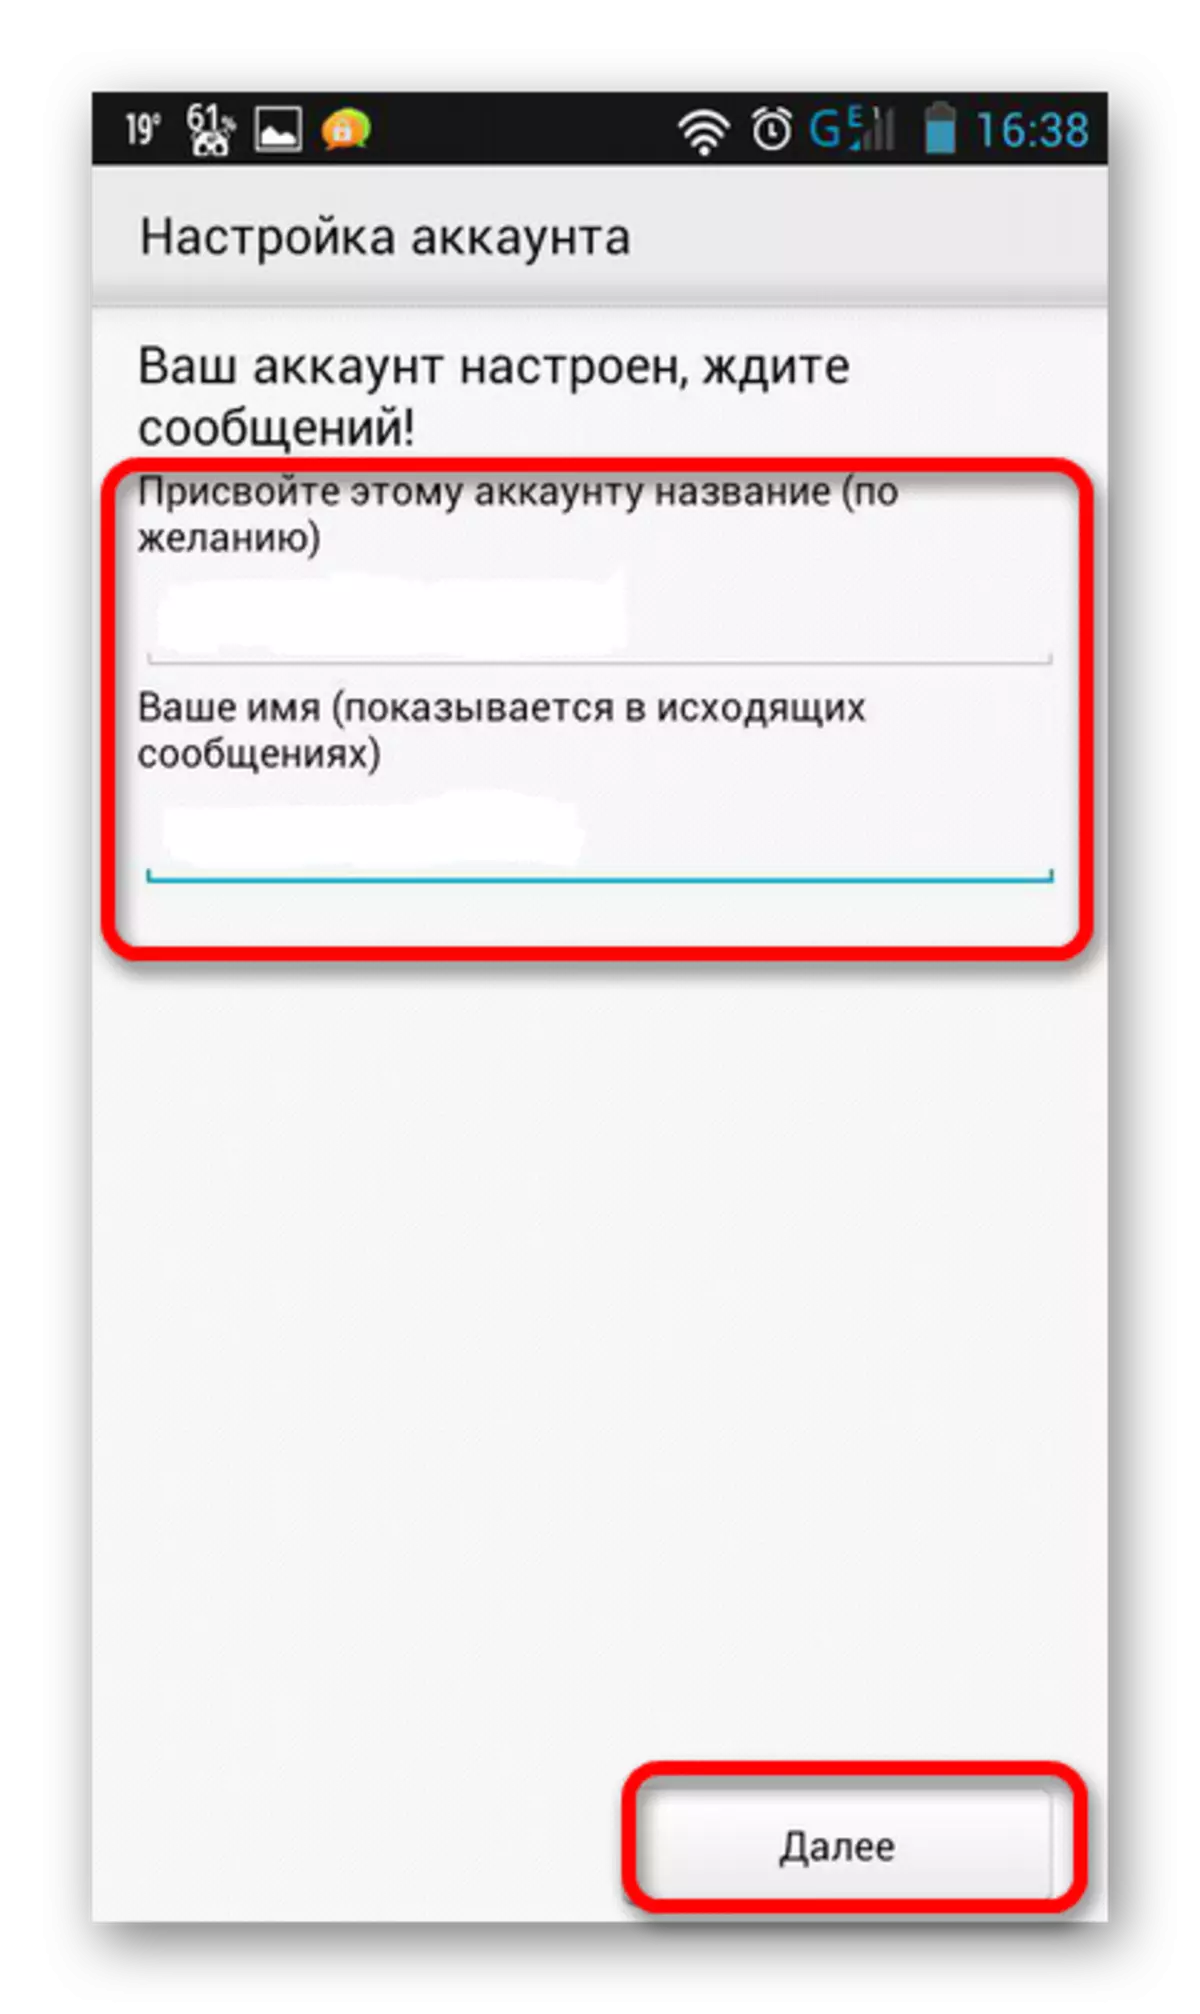 Pamagat at pangalan ng account sa Yandex Mail